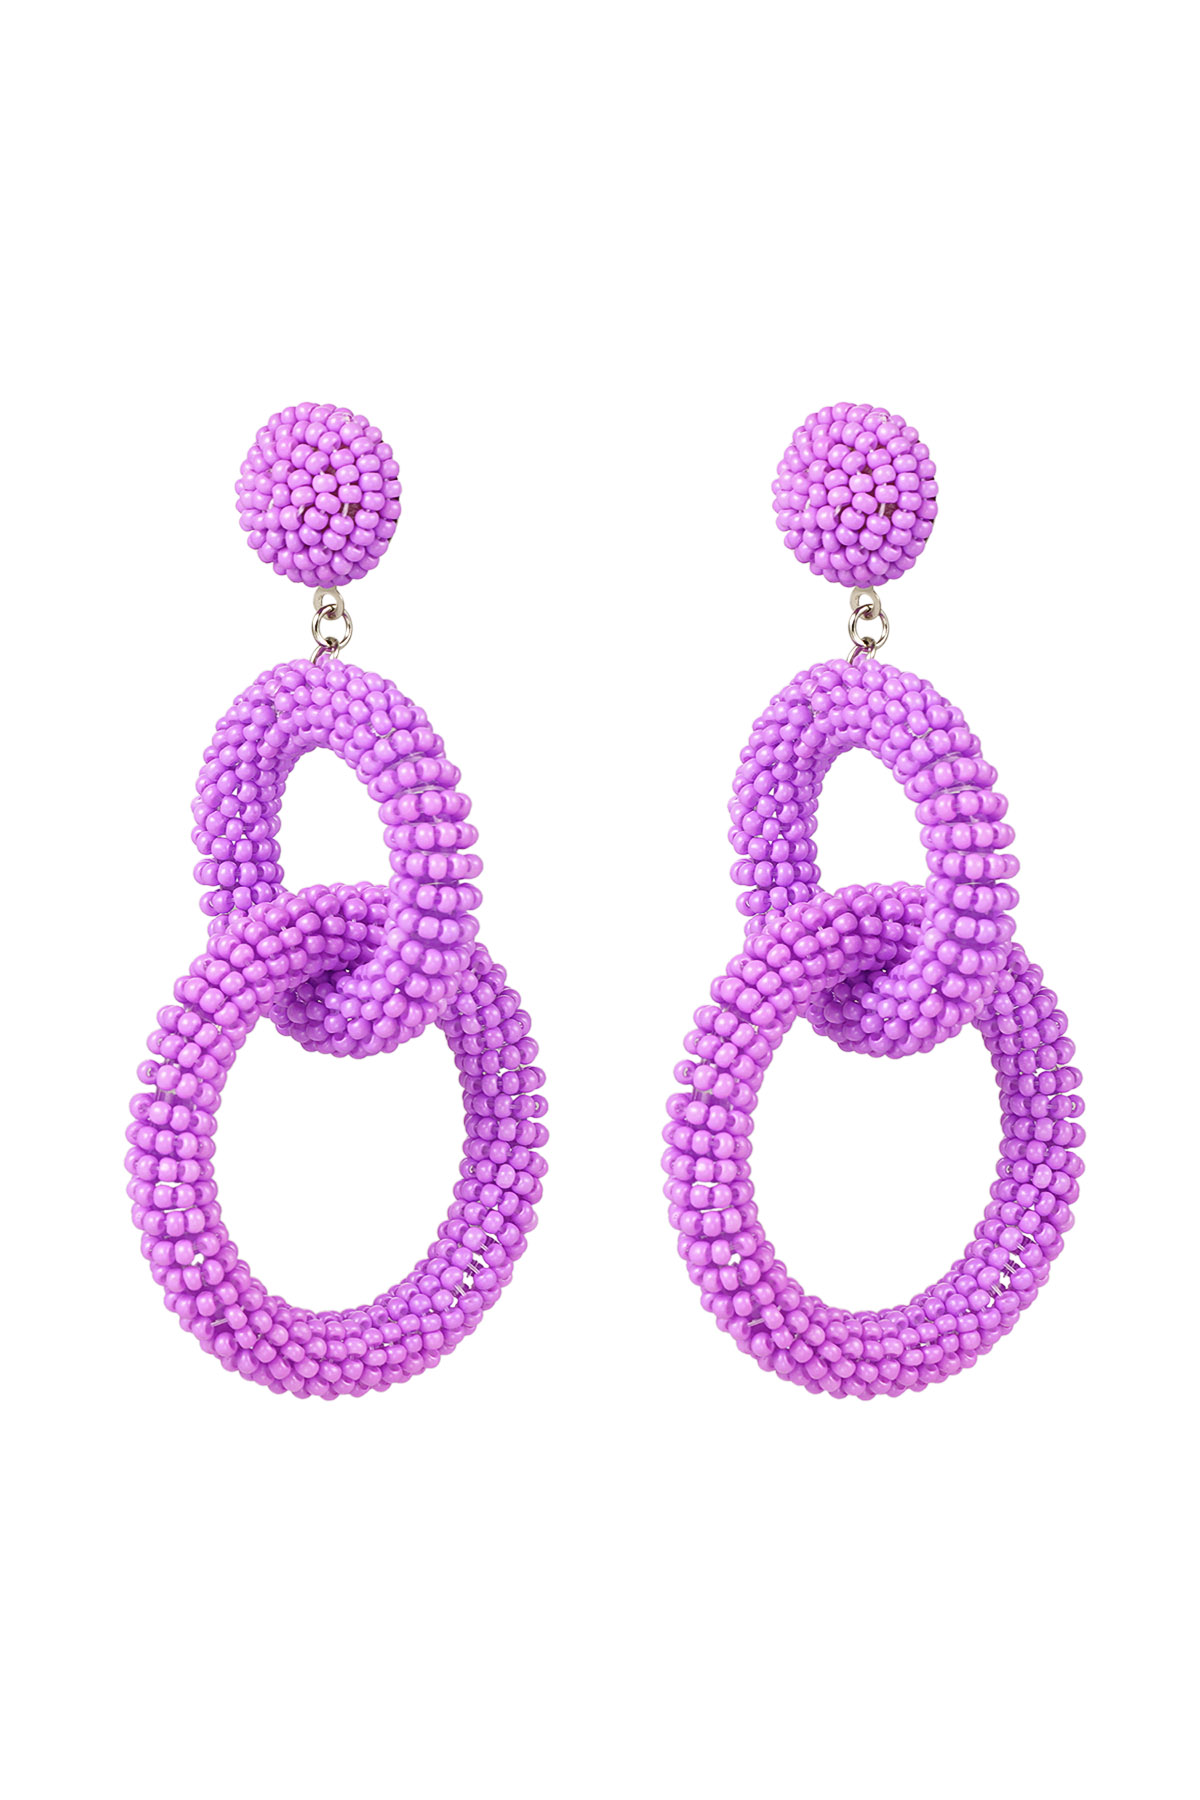 Pendientes de perlas de ganchillo - violeta h5 